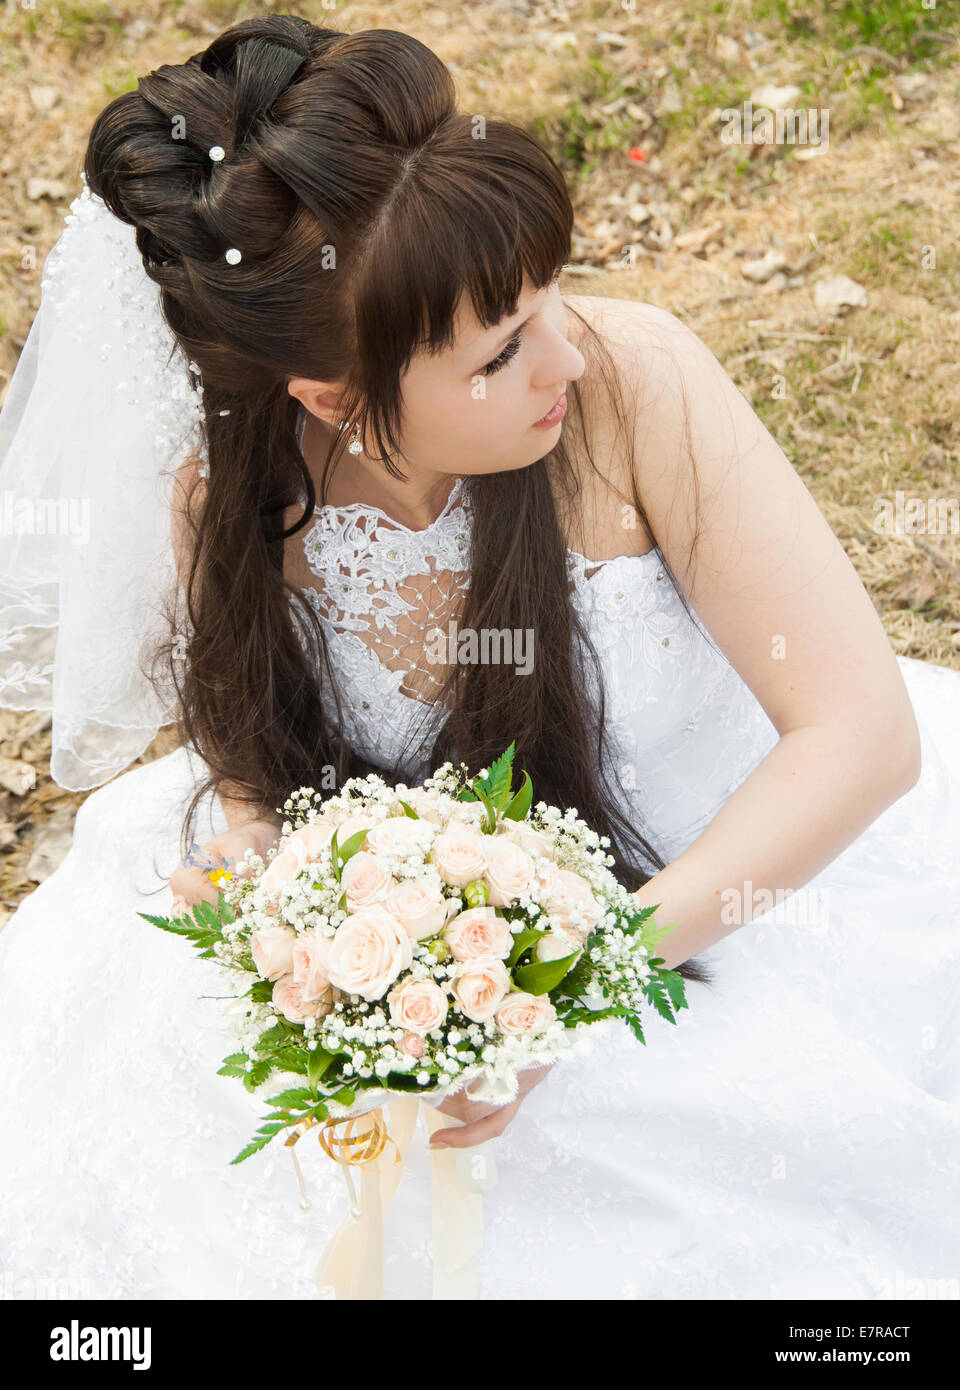 Mariée avec un bouquet de fleurs, dans une robe de mariage Banque D'Images